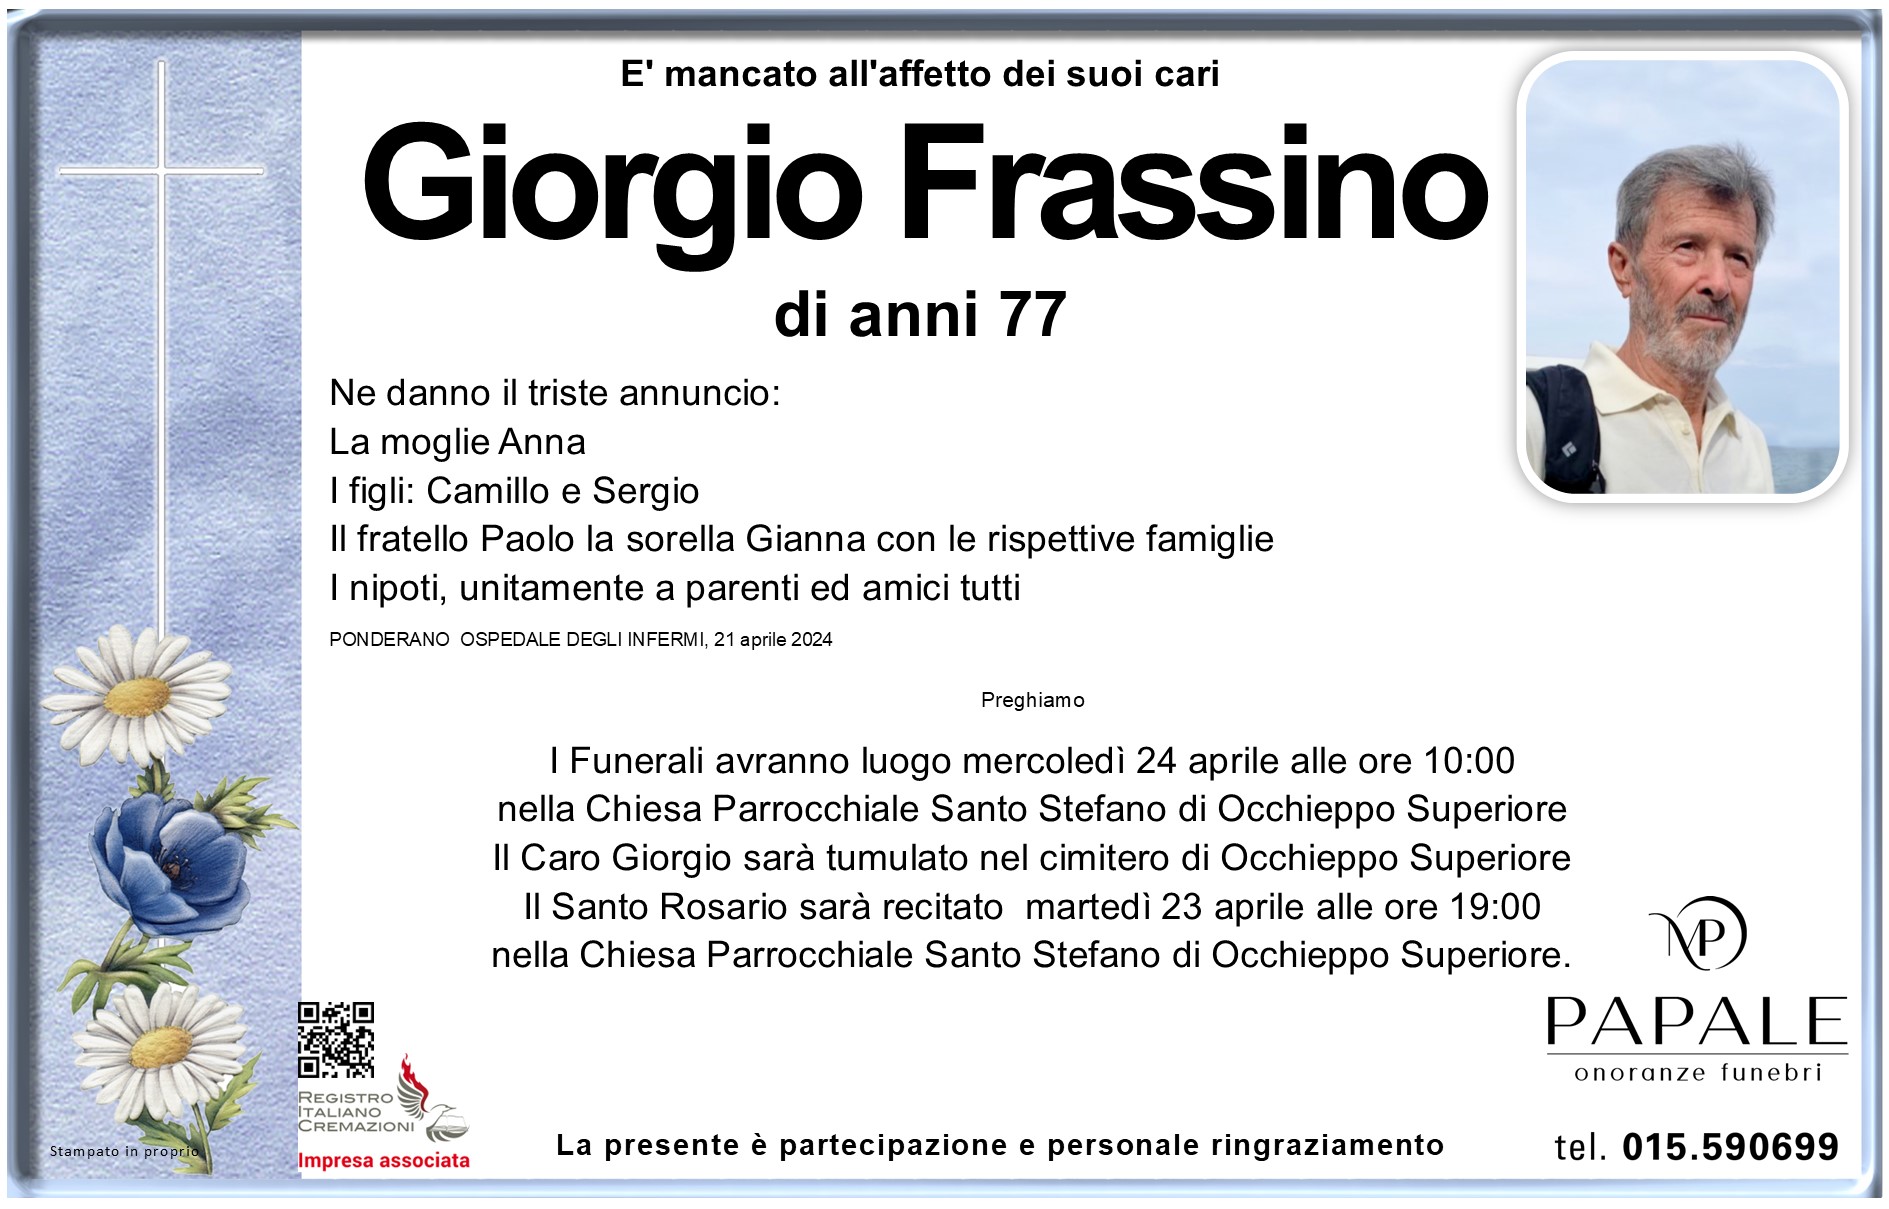 Onoranze Funebri Papale - Necrologi - Necrologio di Giorgio Frassino